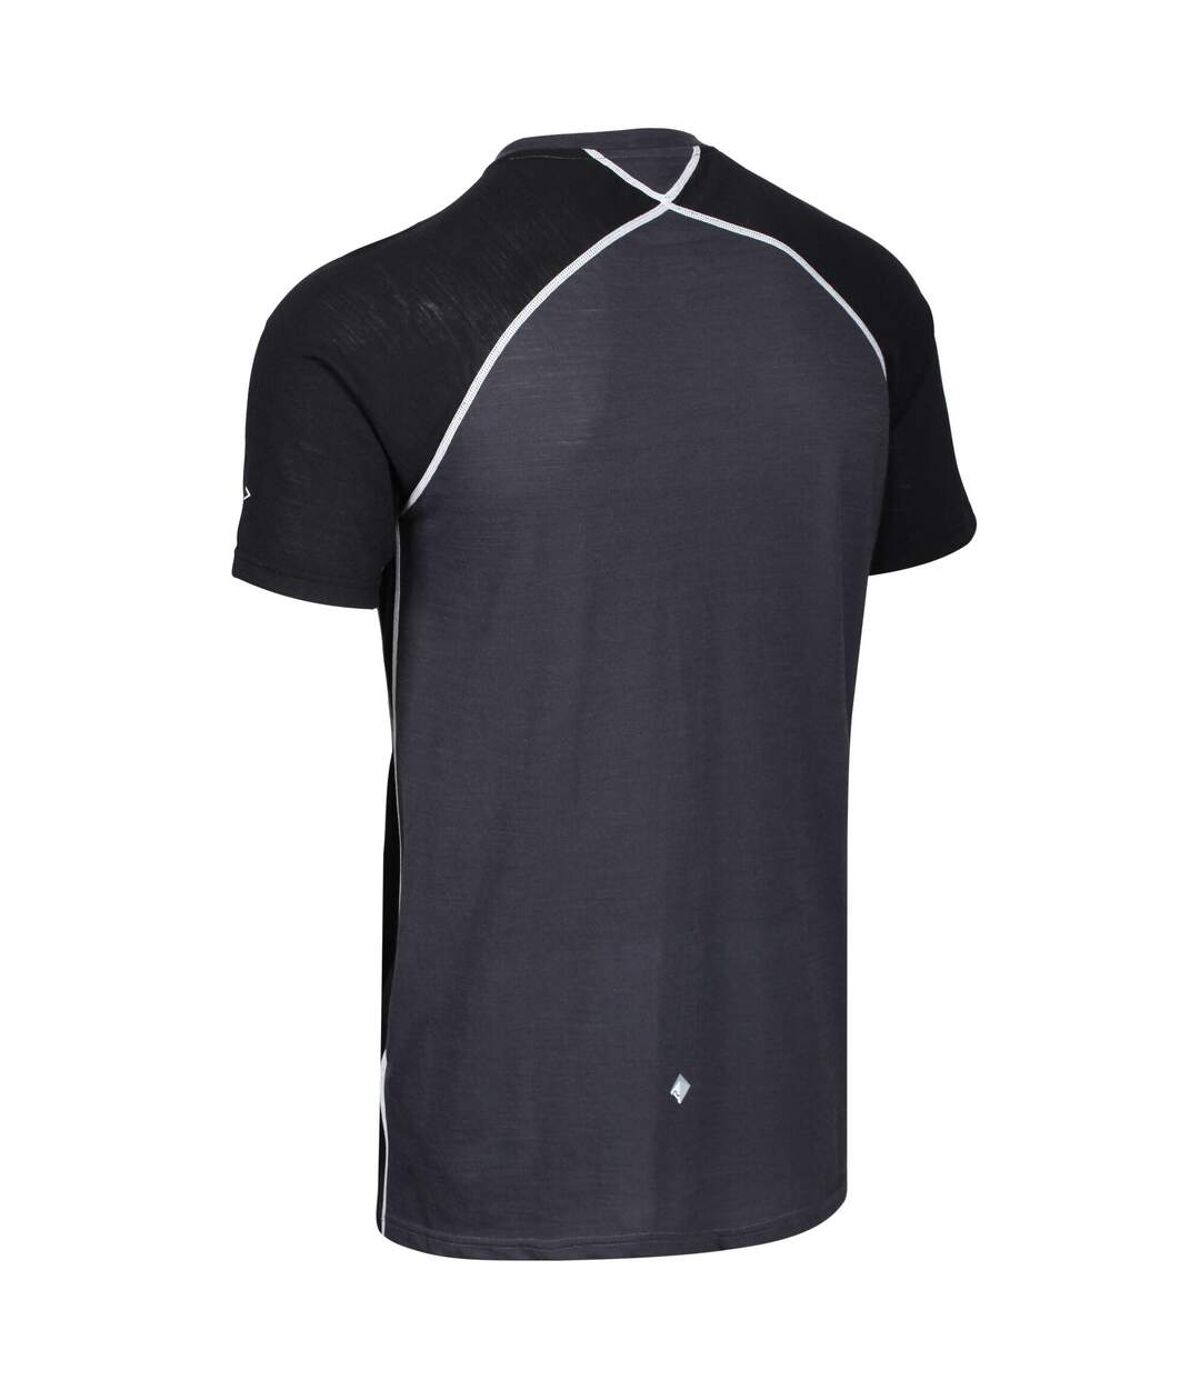 Regatta - T-shirt TORNELL - Hommes (Gris clair/noir) - UTRG4935